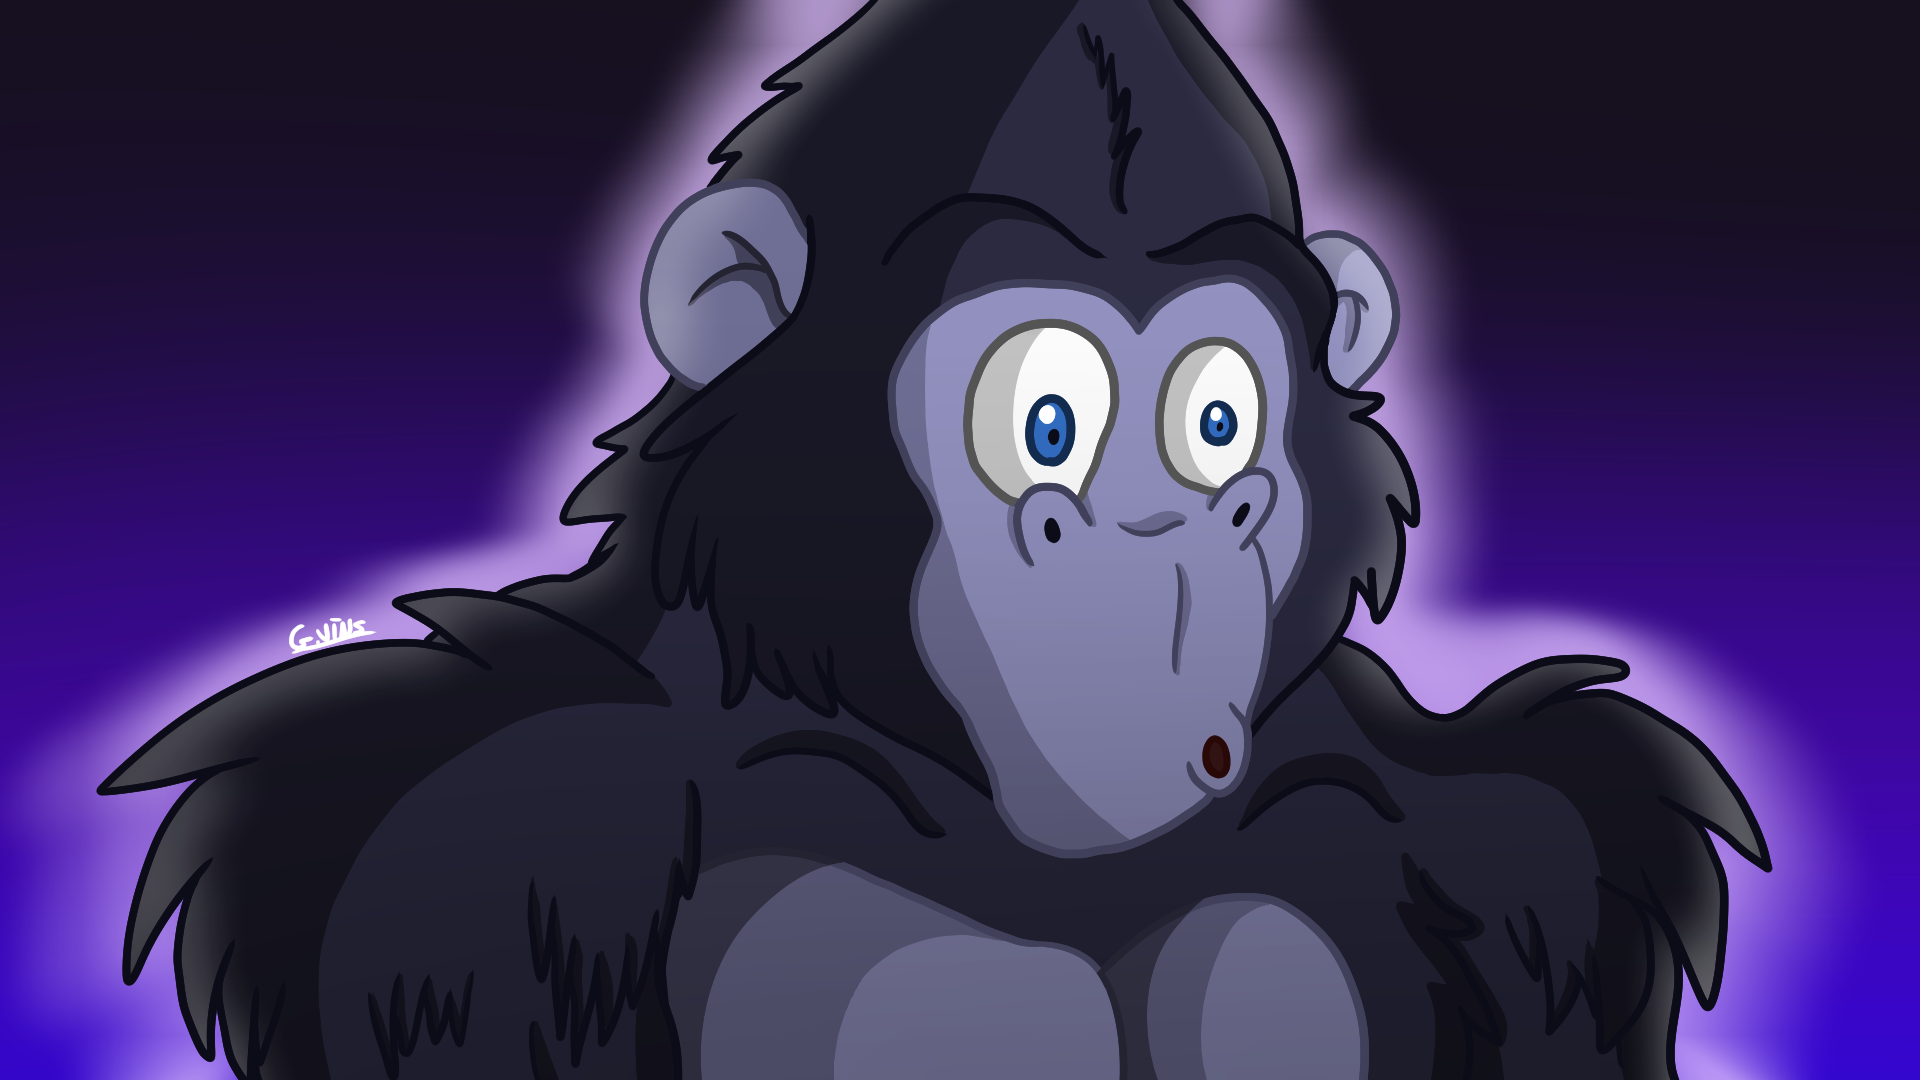 The Cartoon Gorilla by mondewebcom on DeviantArt